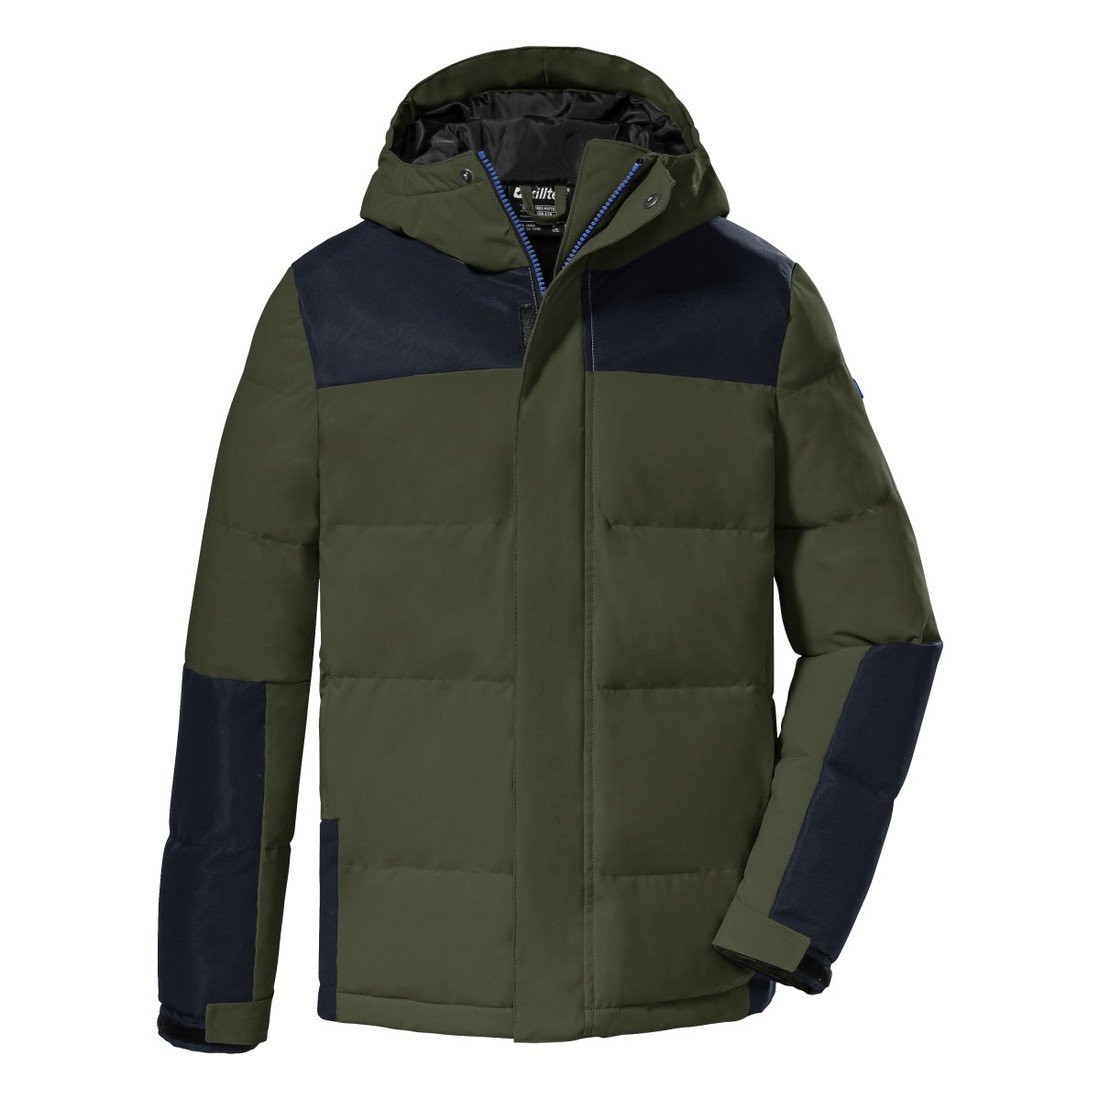 Chlapecká zimní bunda killtec 207 zelená/černá 128